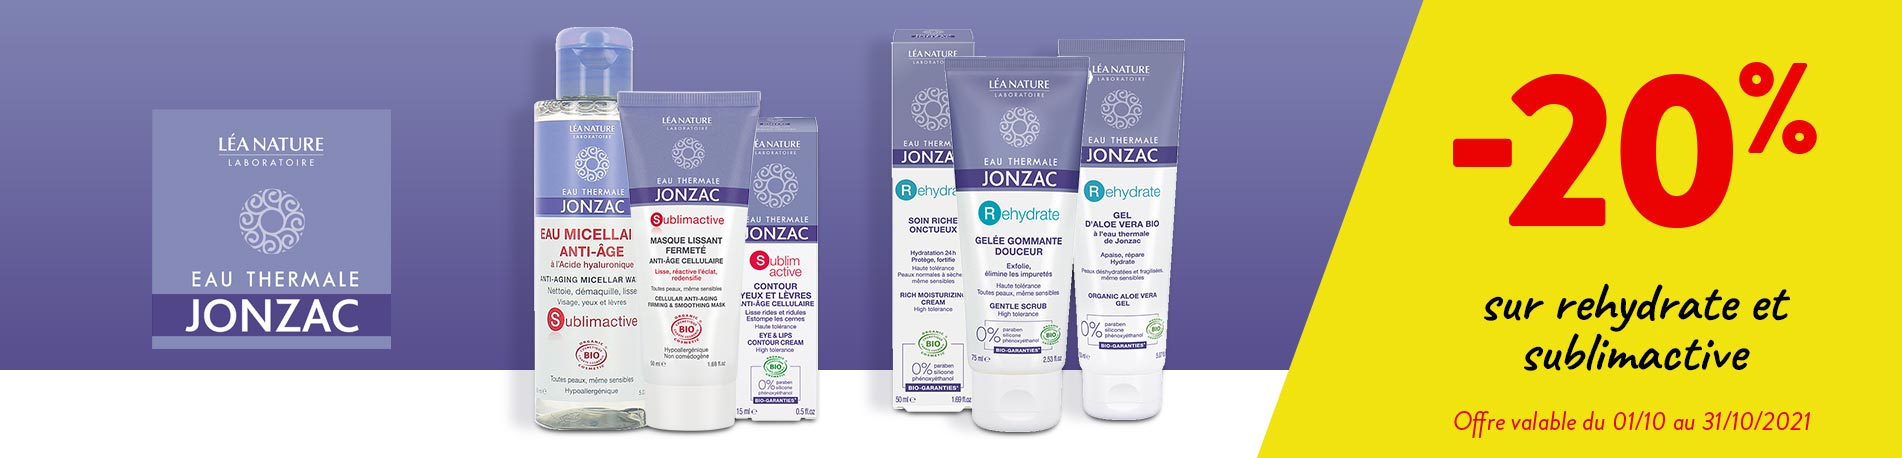 Promotion Jonzac